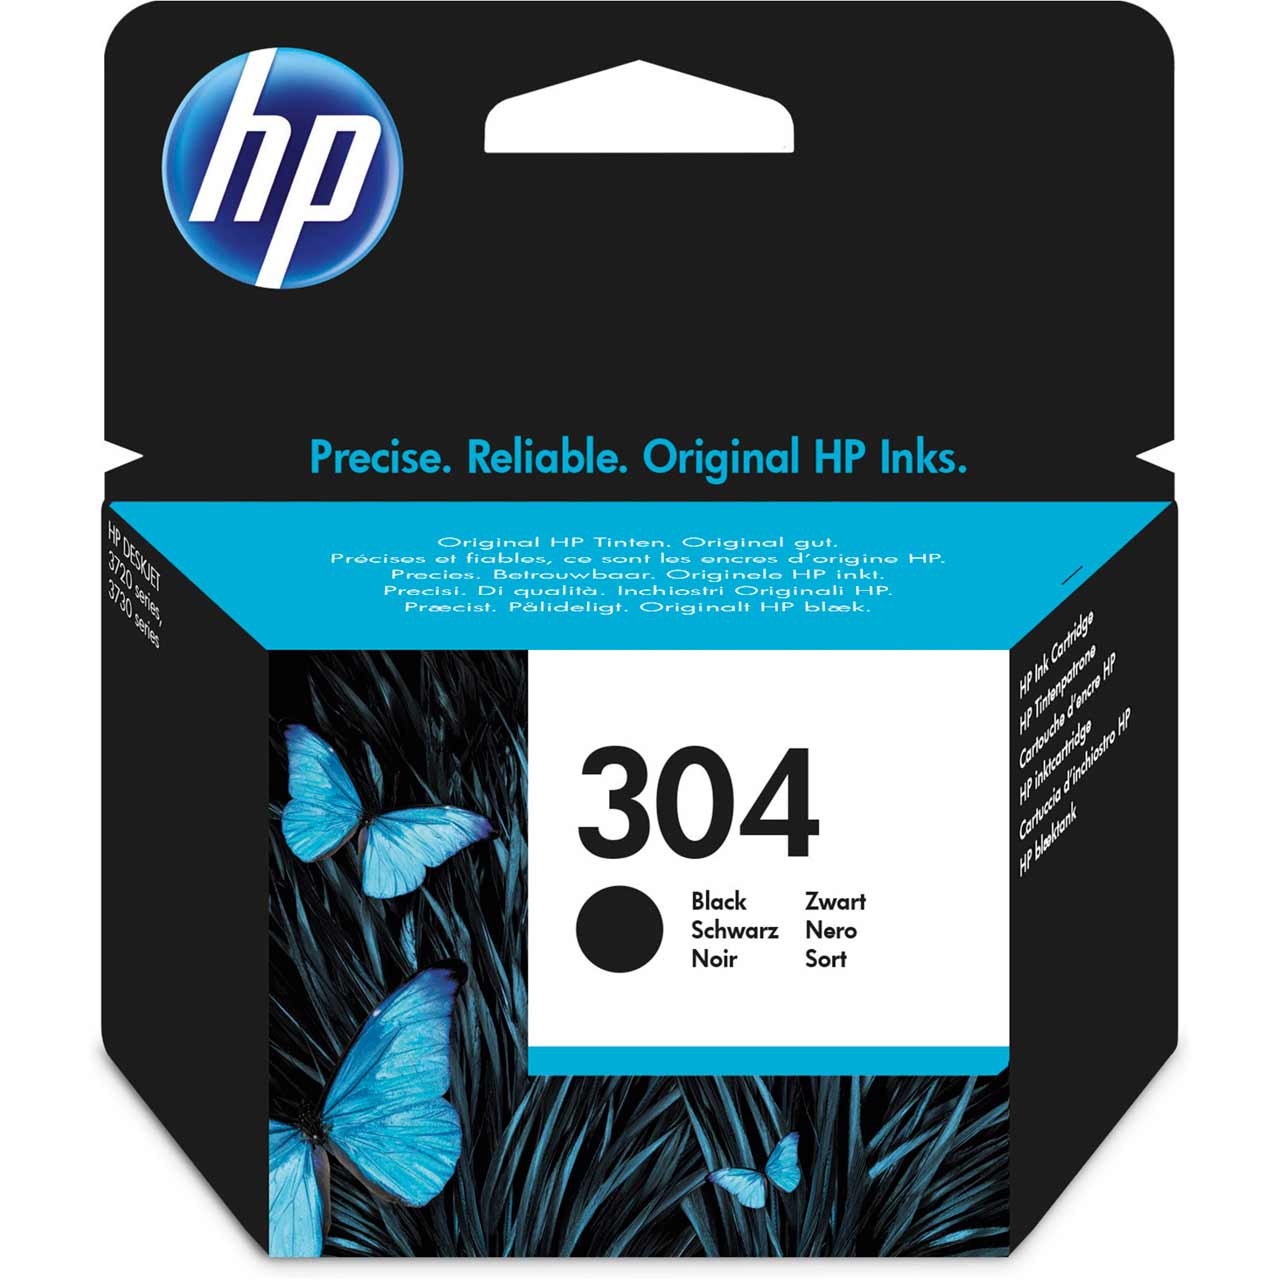 HP 304 Black Original Ink Cartridge Review